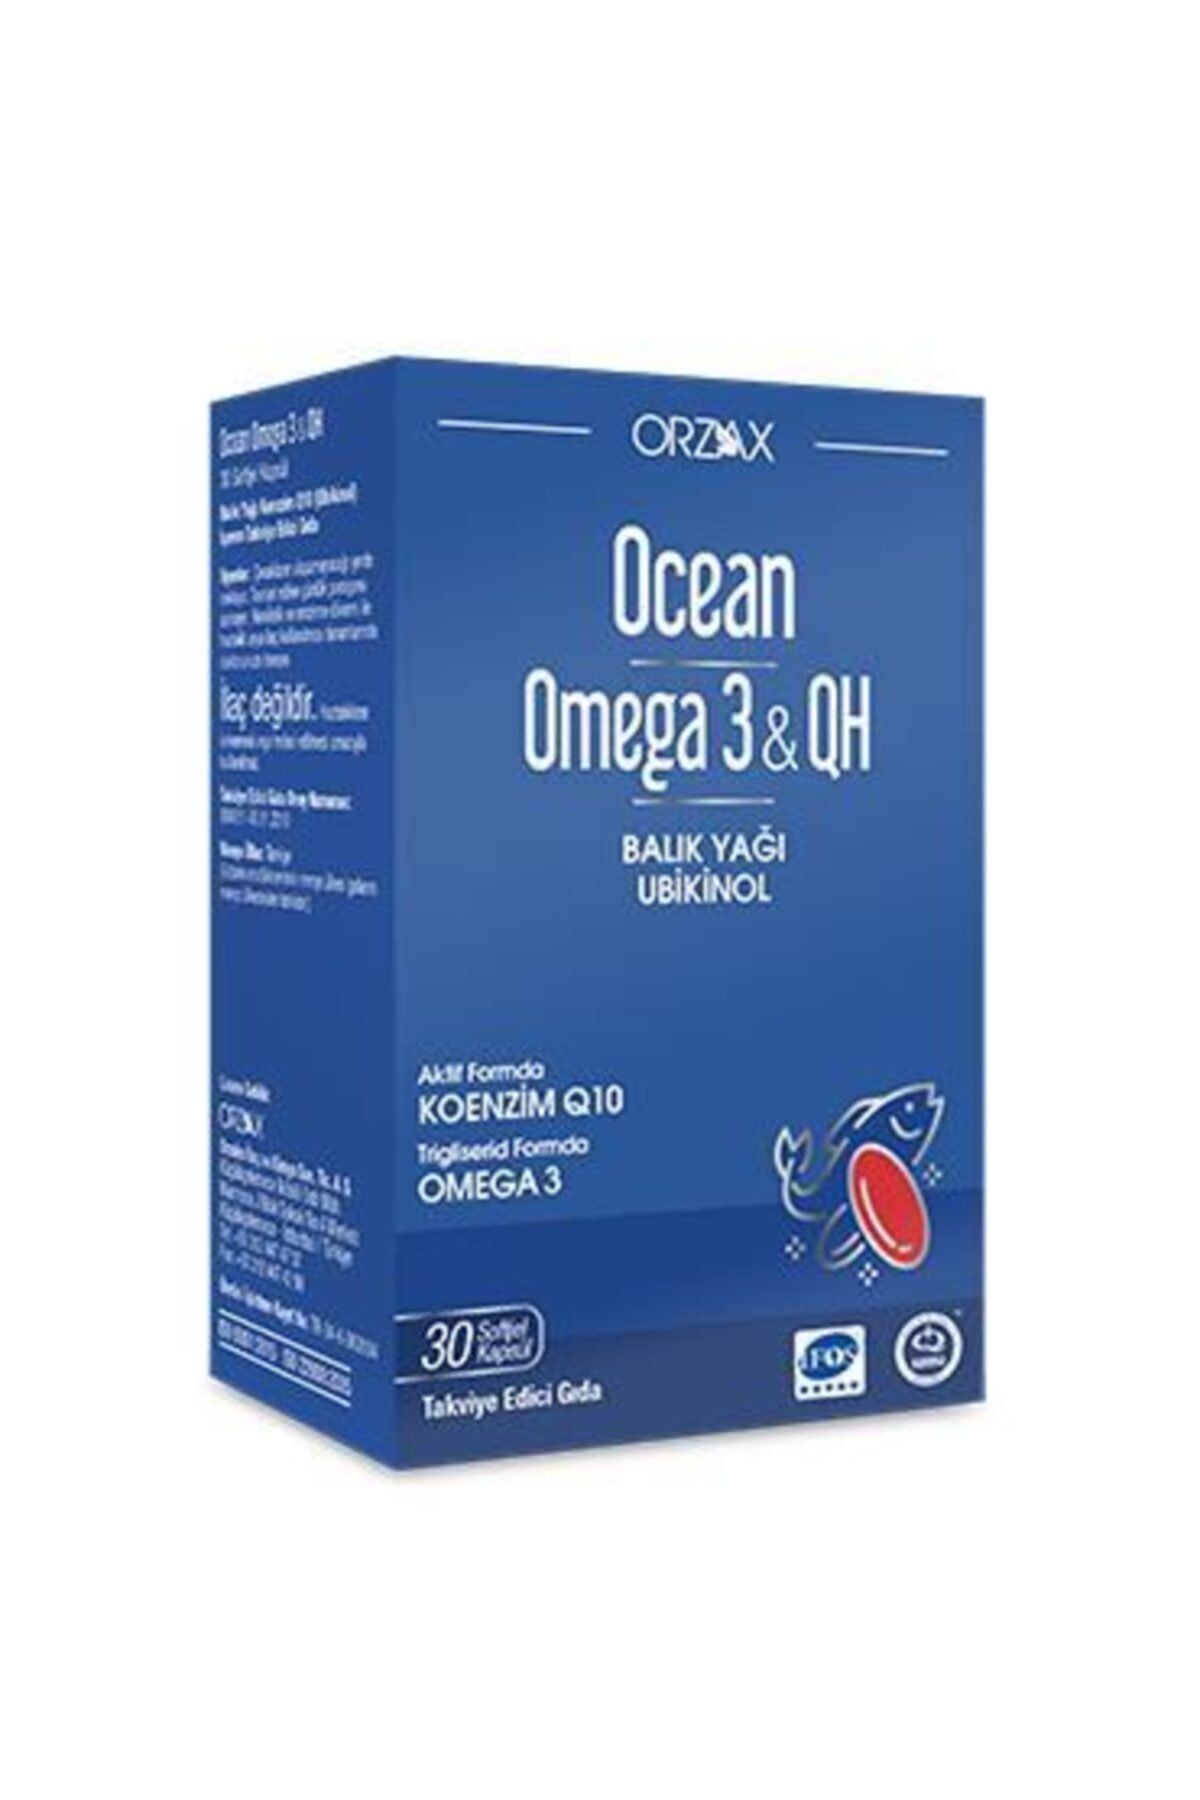 Ocean Ocean Omega 3 & Qh Takviye Edici Gıda 30 Kapsül